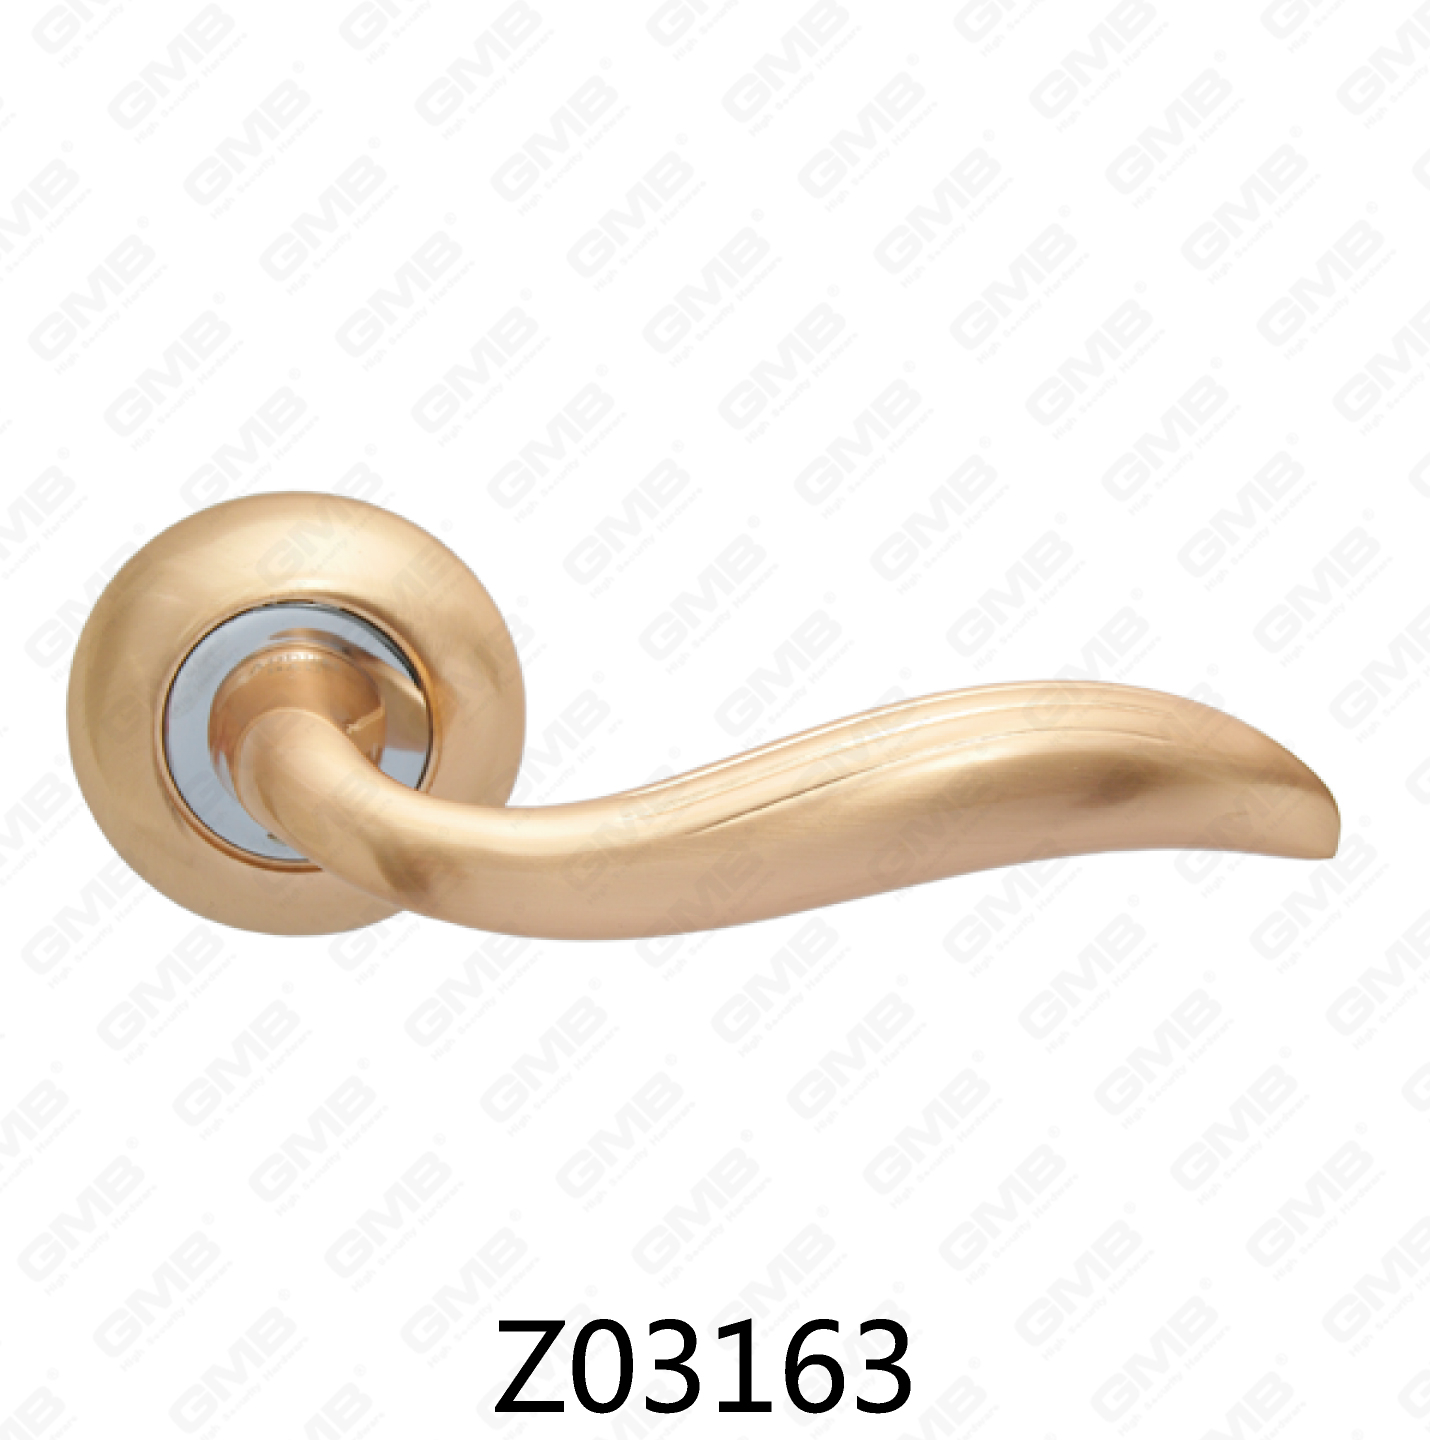 ידית דלת רוזטה מסגסוגת אבץ של Zamak עם רוזטה עגולה (Z02163)